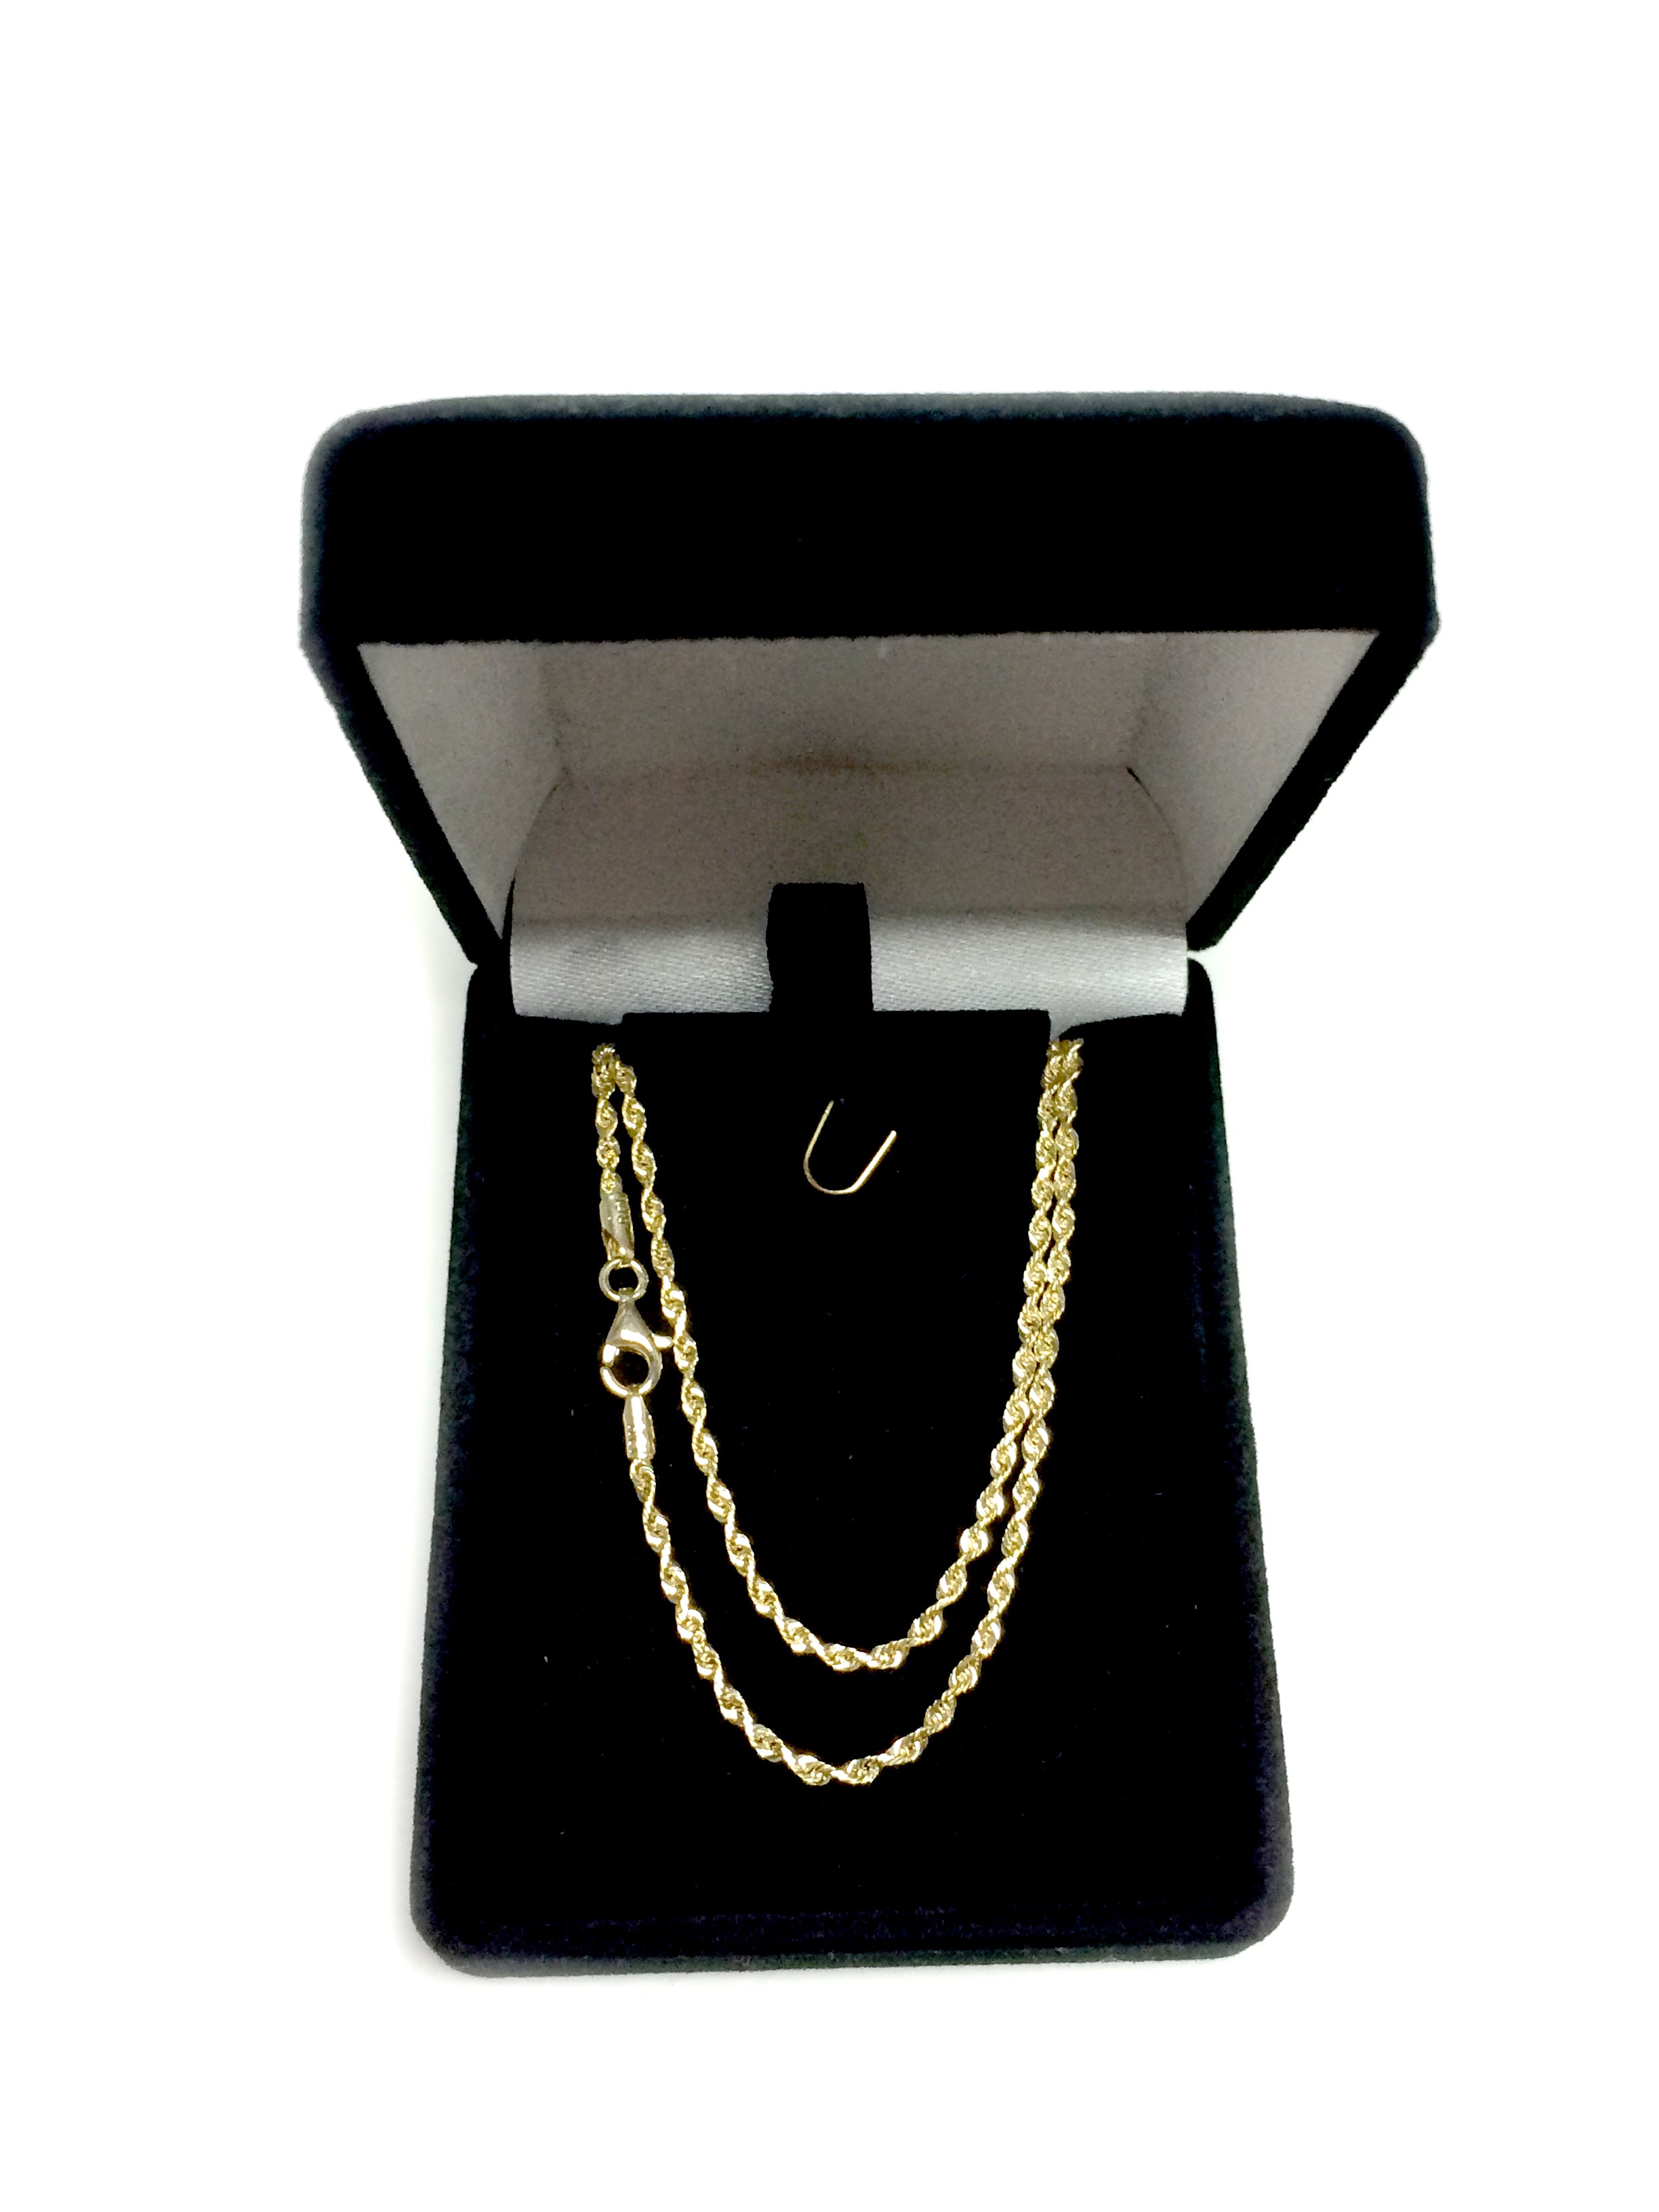 14 k gult massivt guld diamantskuret repkedja halsband, 2,0 mm fina designersmycken för män och kvinnor